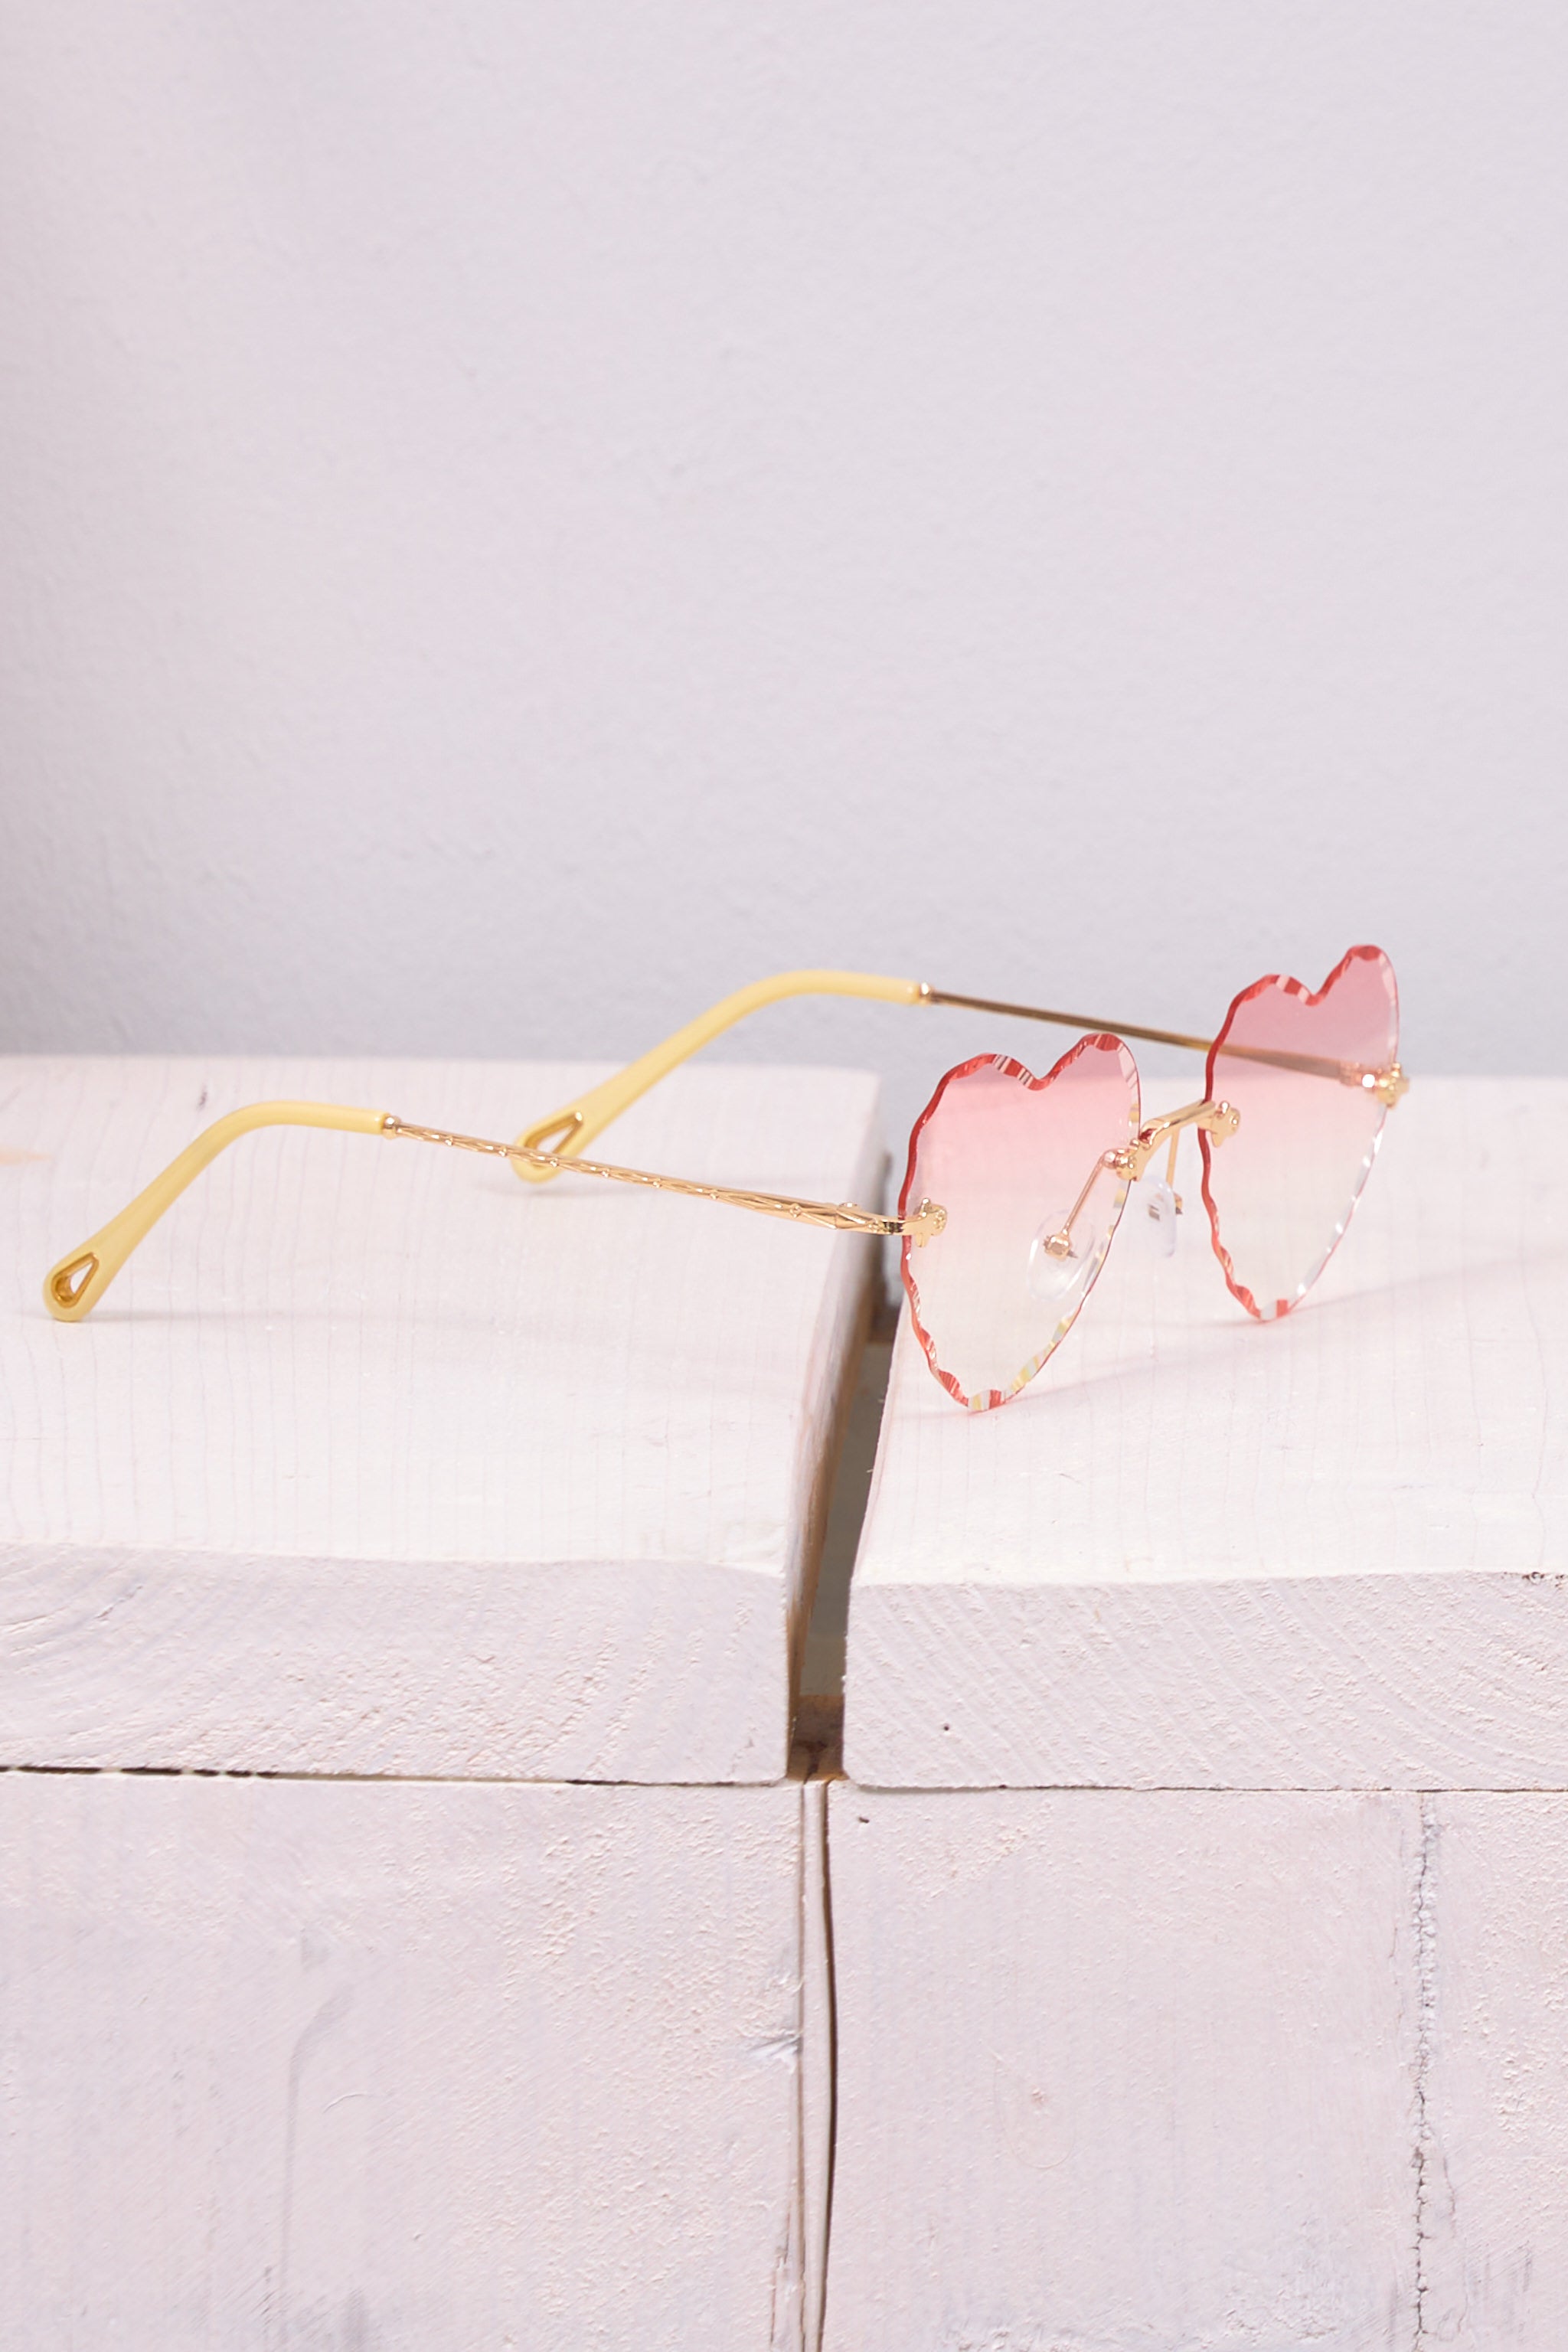 Sonnenbrille in Herzform, rosa